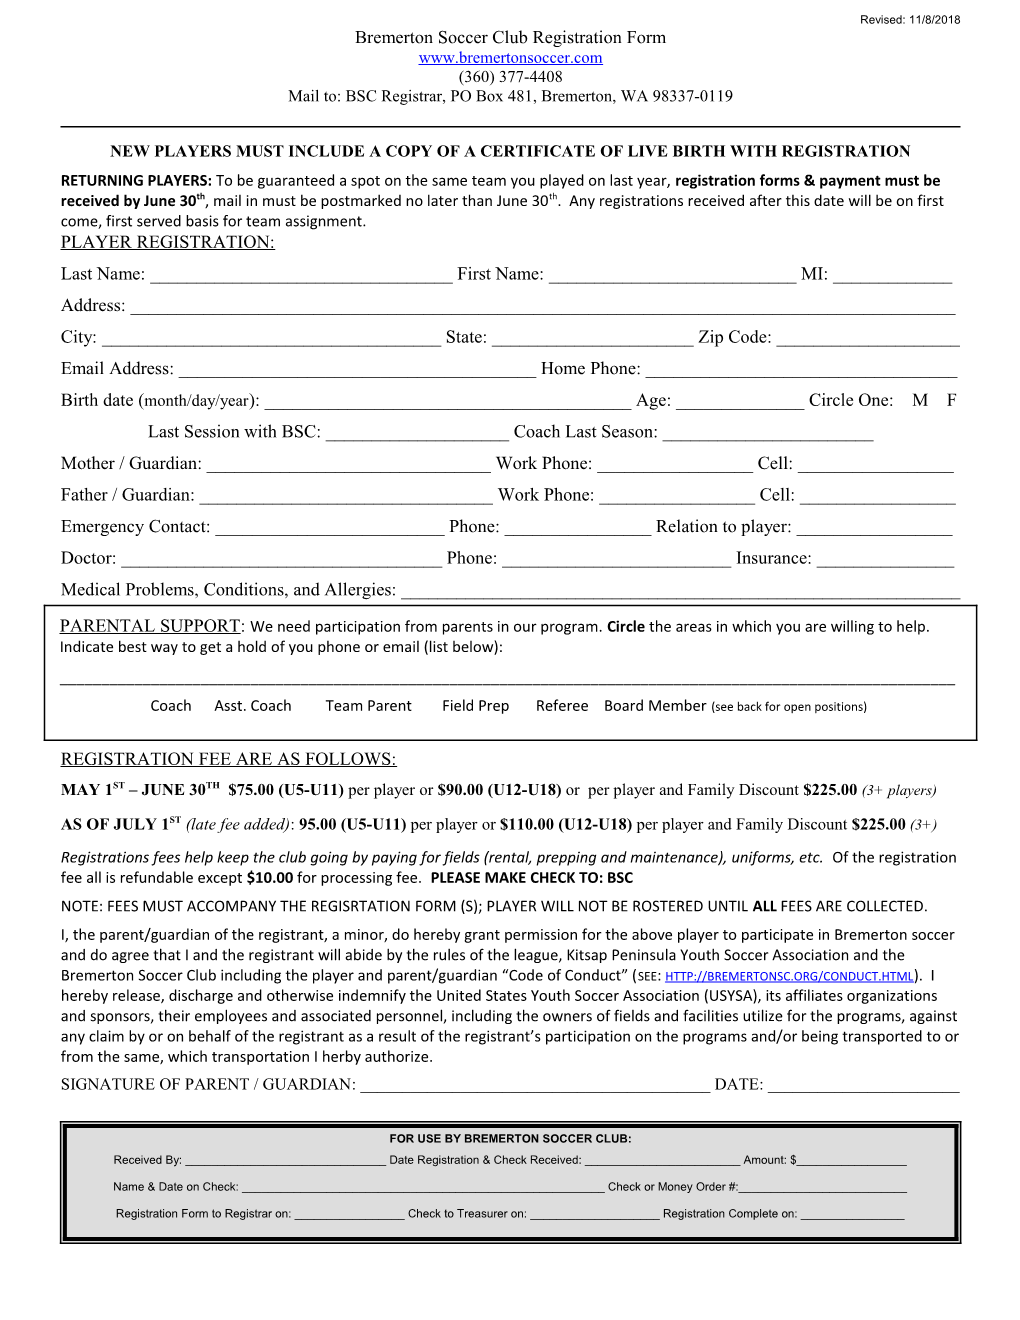 Bremerton Soccer Club Registration Form